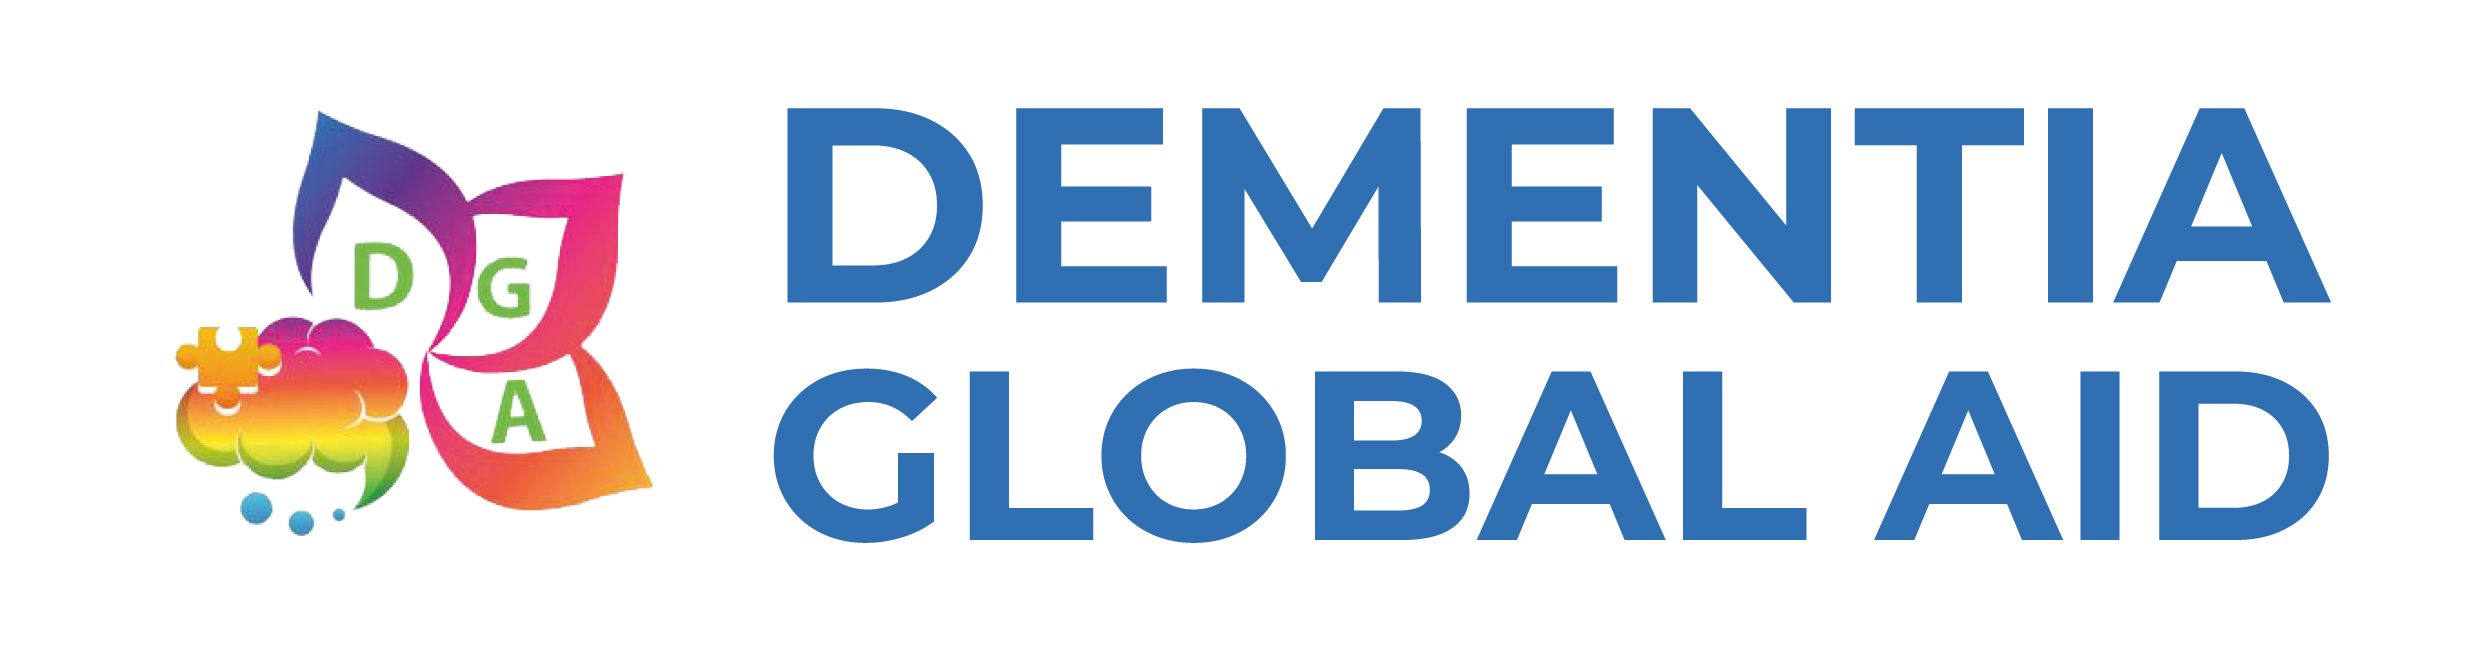 Dementia Global Aid